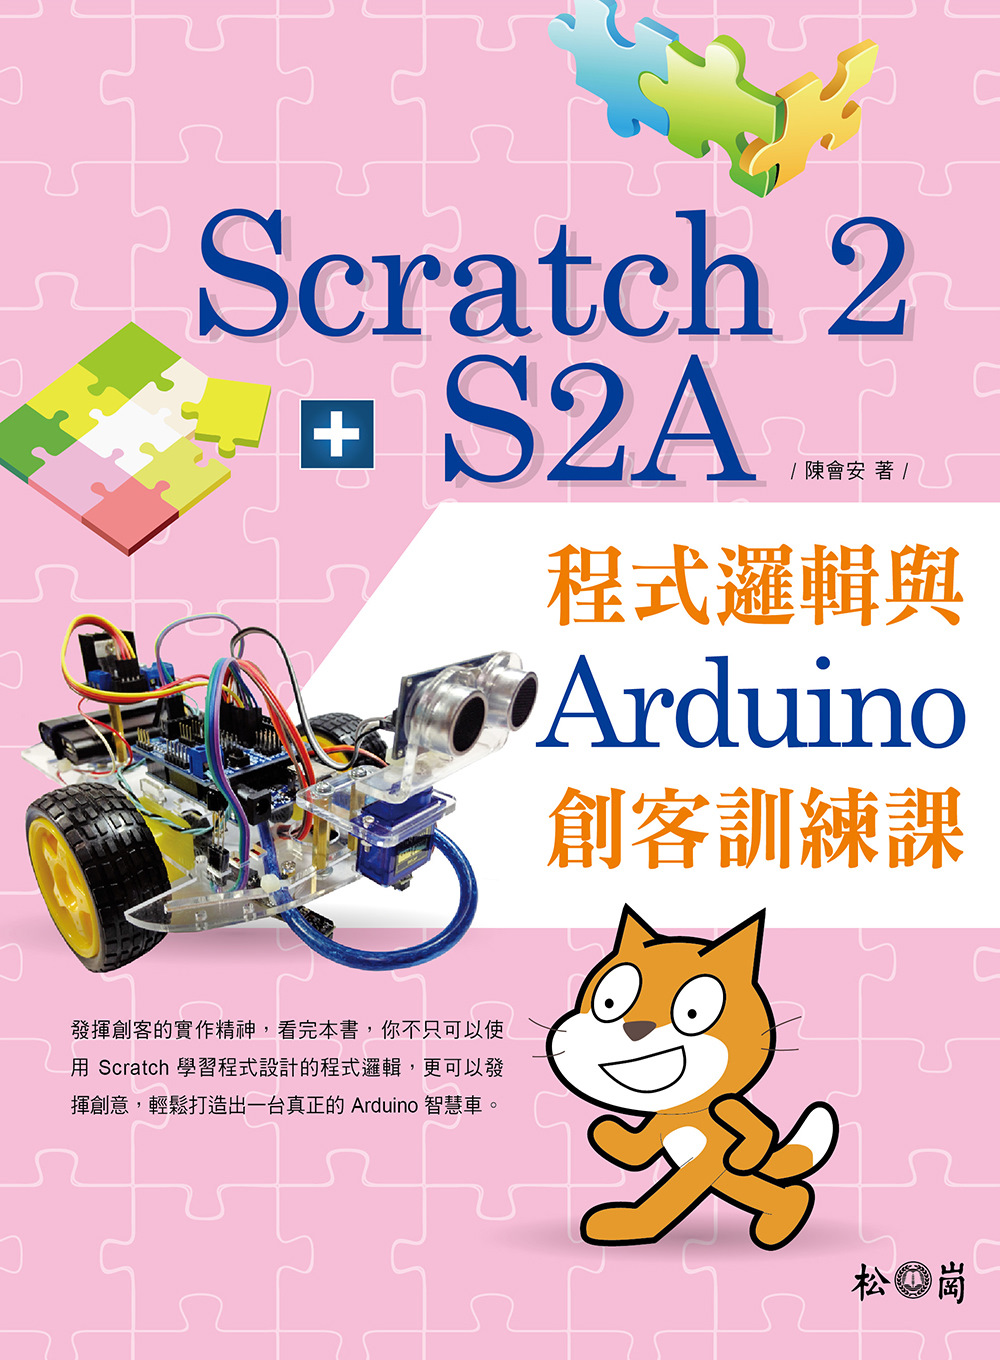 Scratch 2 + S2A程式邏輯與Arduino創客訓練課